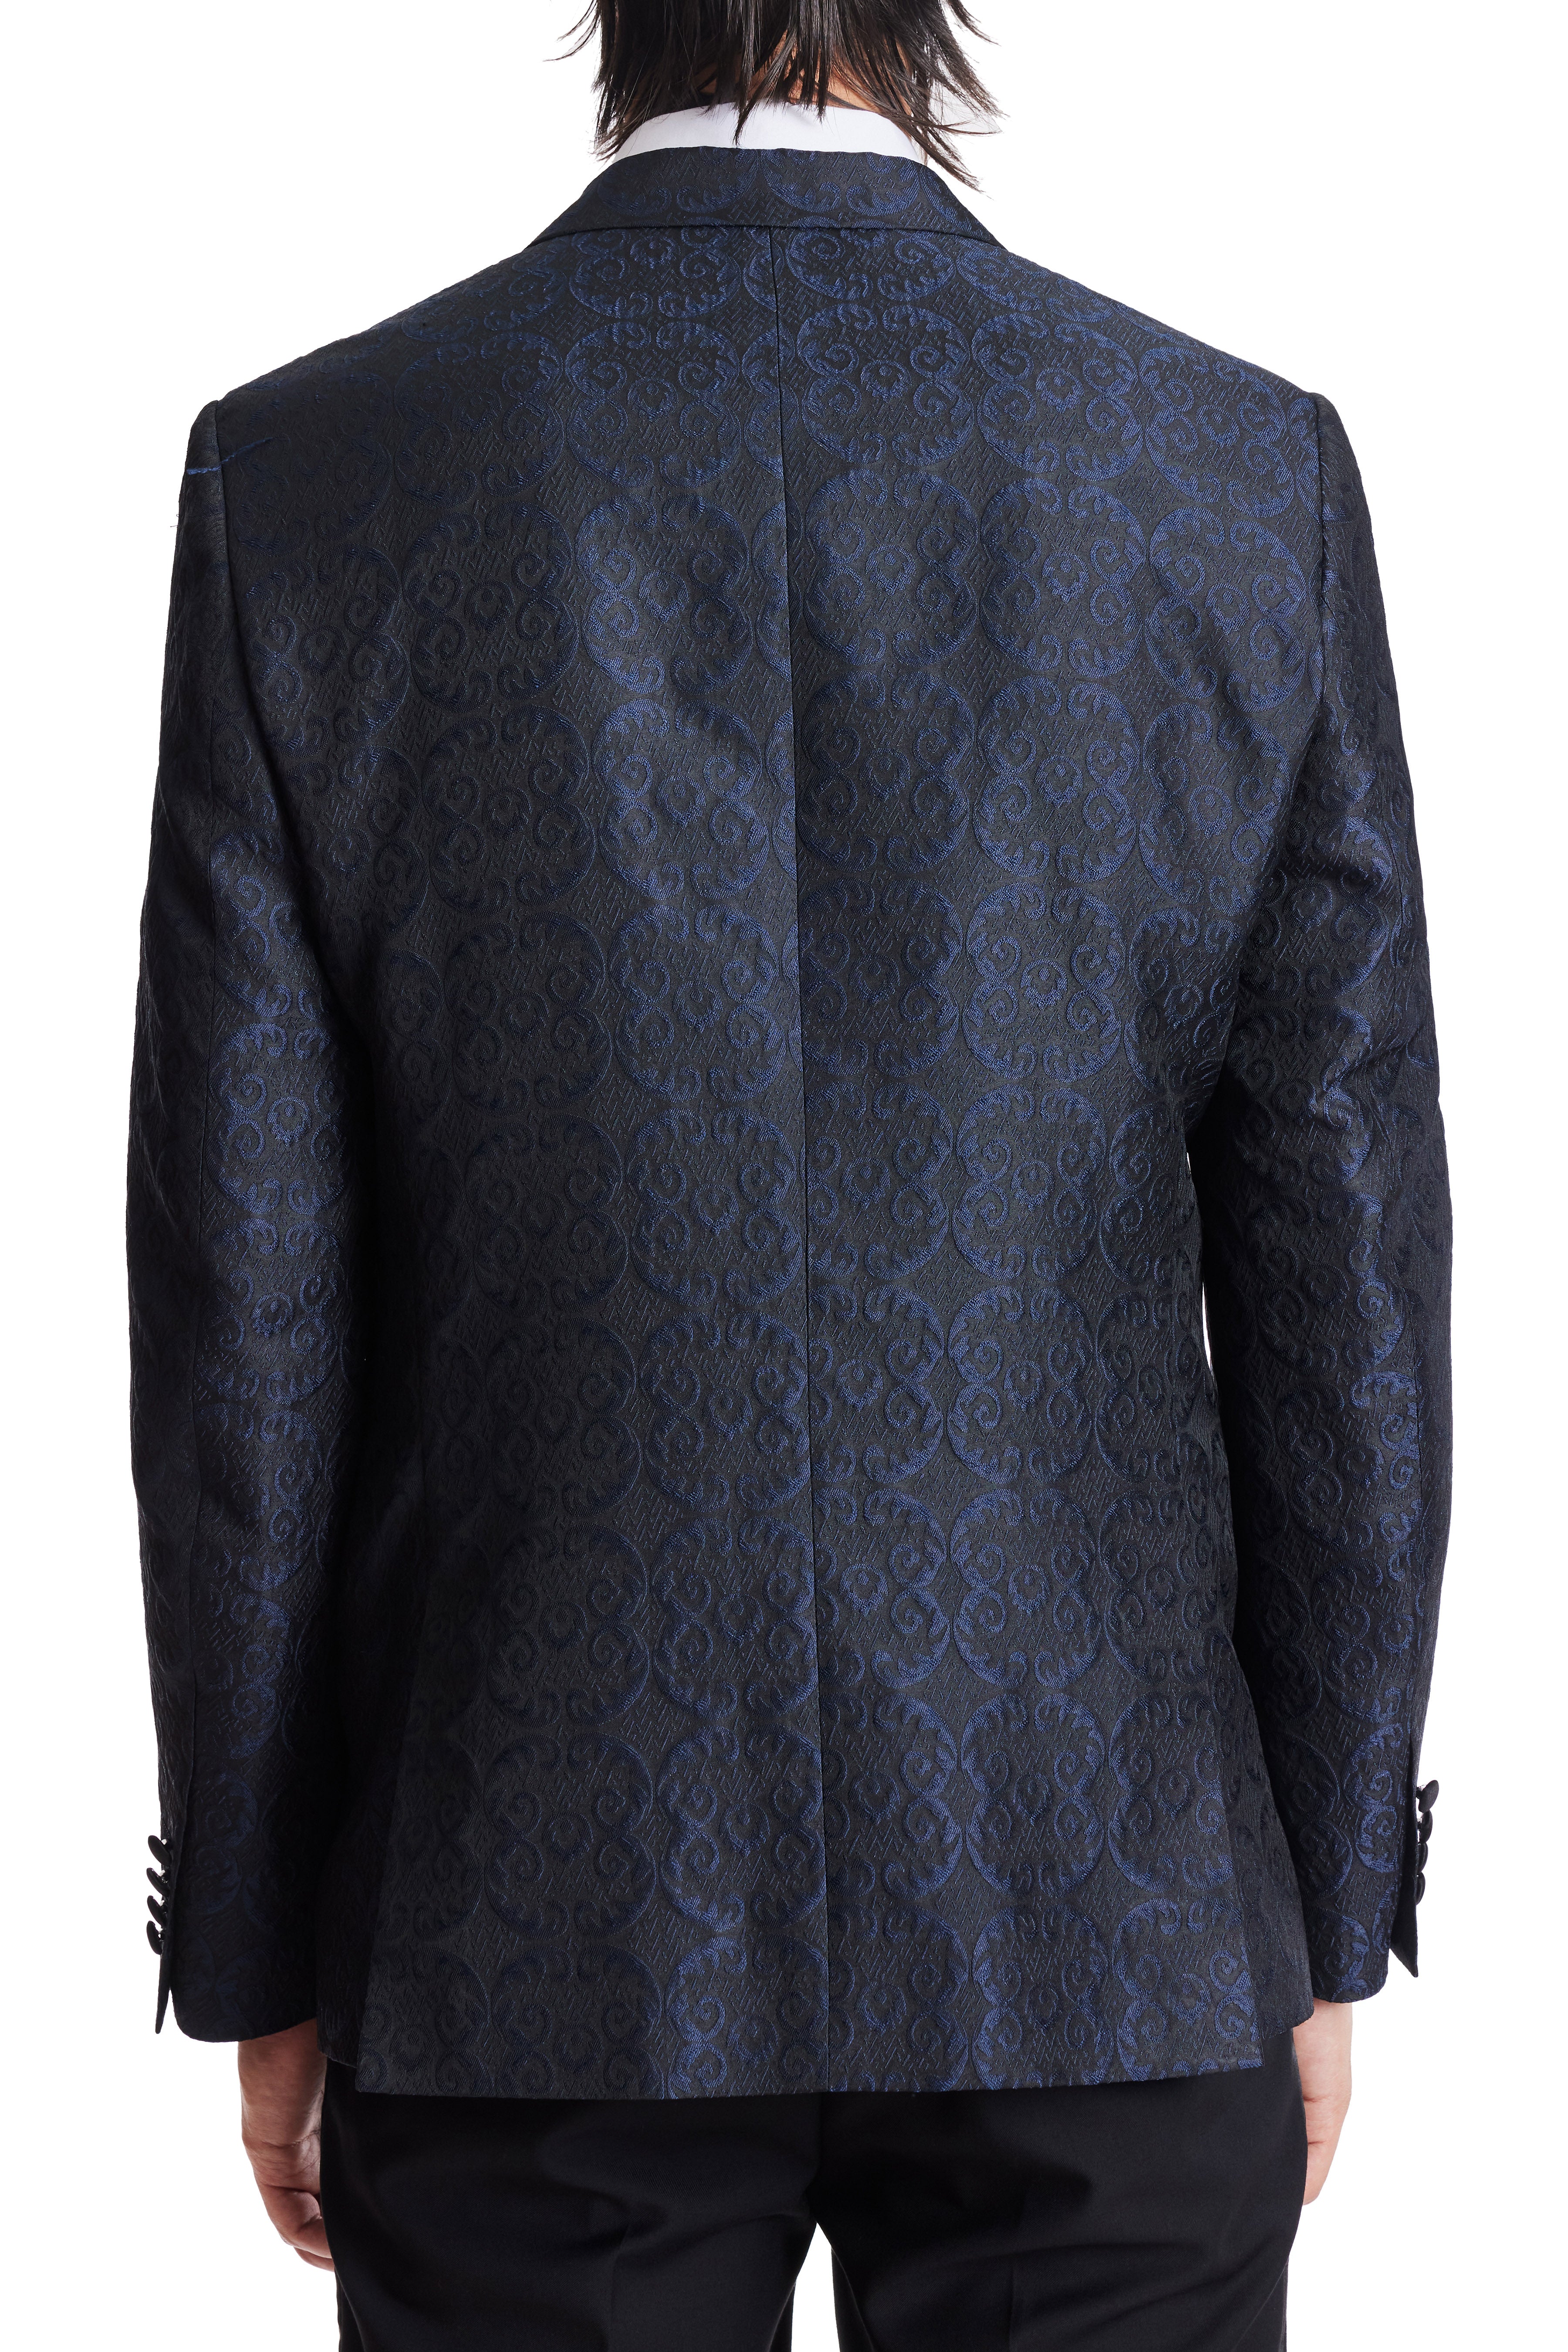 Grosvenor Peak Tux Jacket - slim - Black and Blue